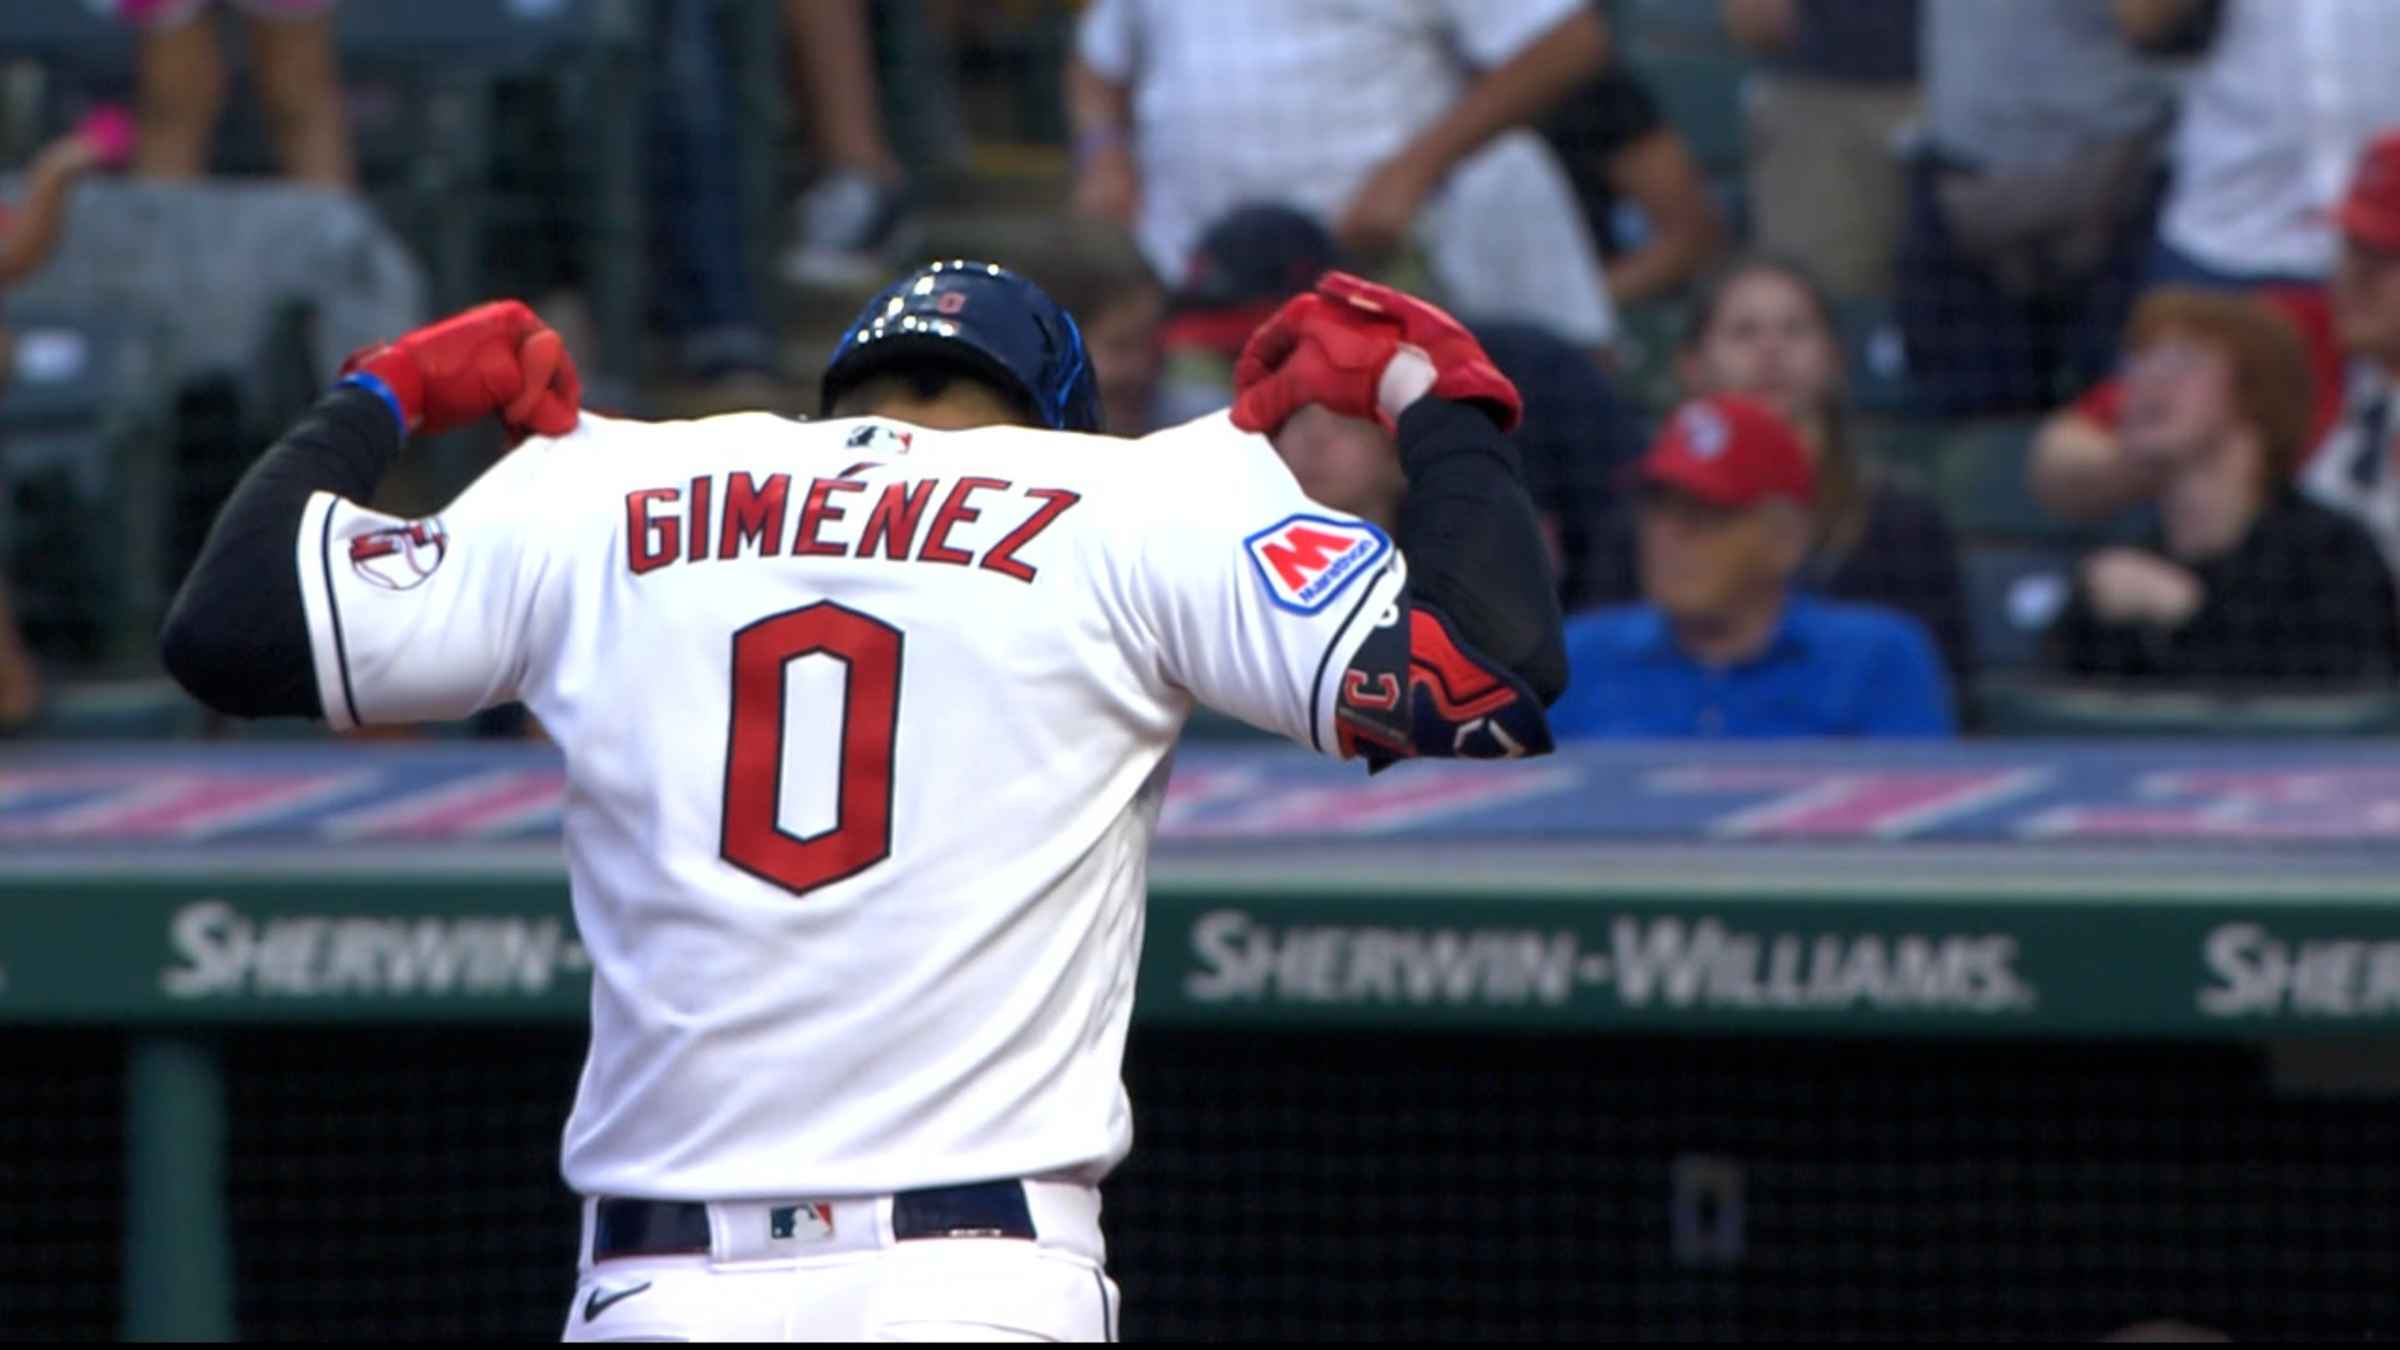 Andrés Giménez hits 2-run HR, two doubles as Guardians beat White Sox 4-2 -  ABC News